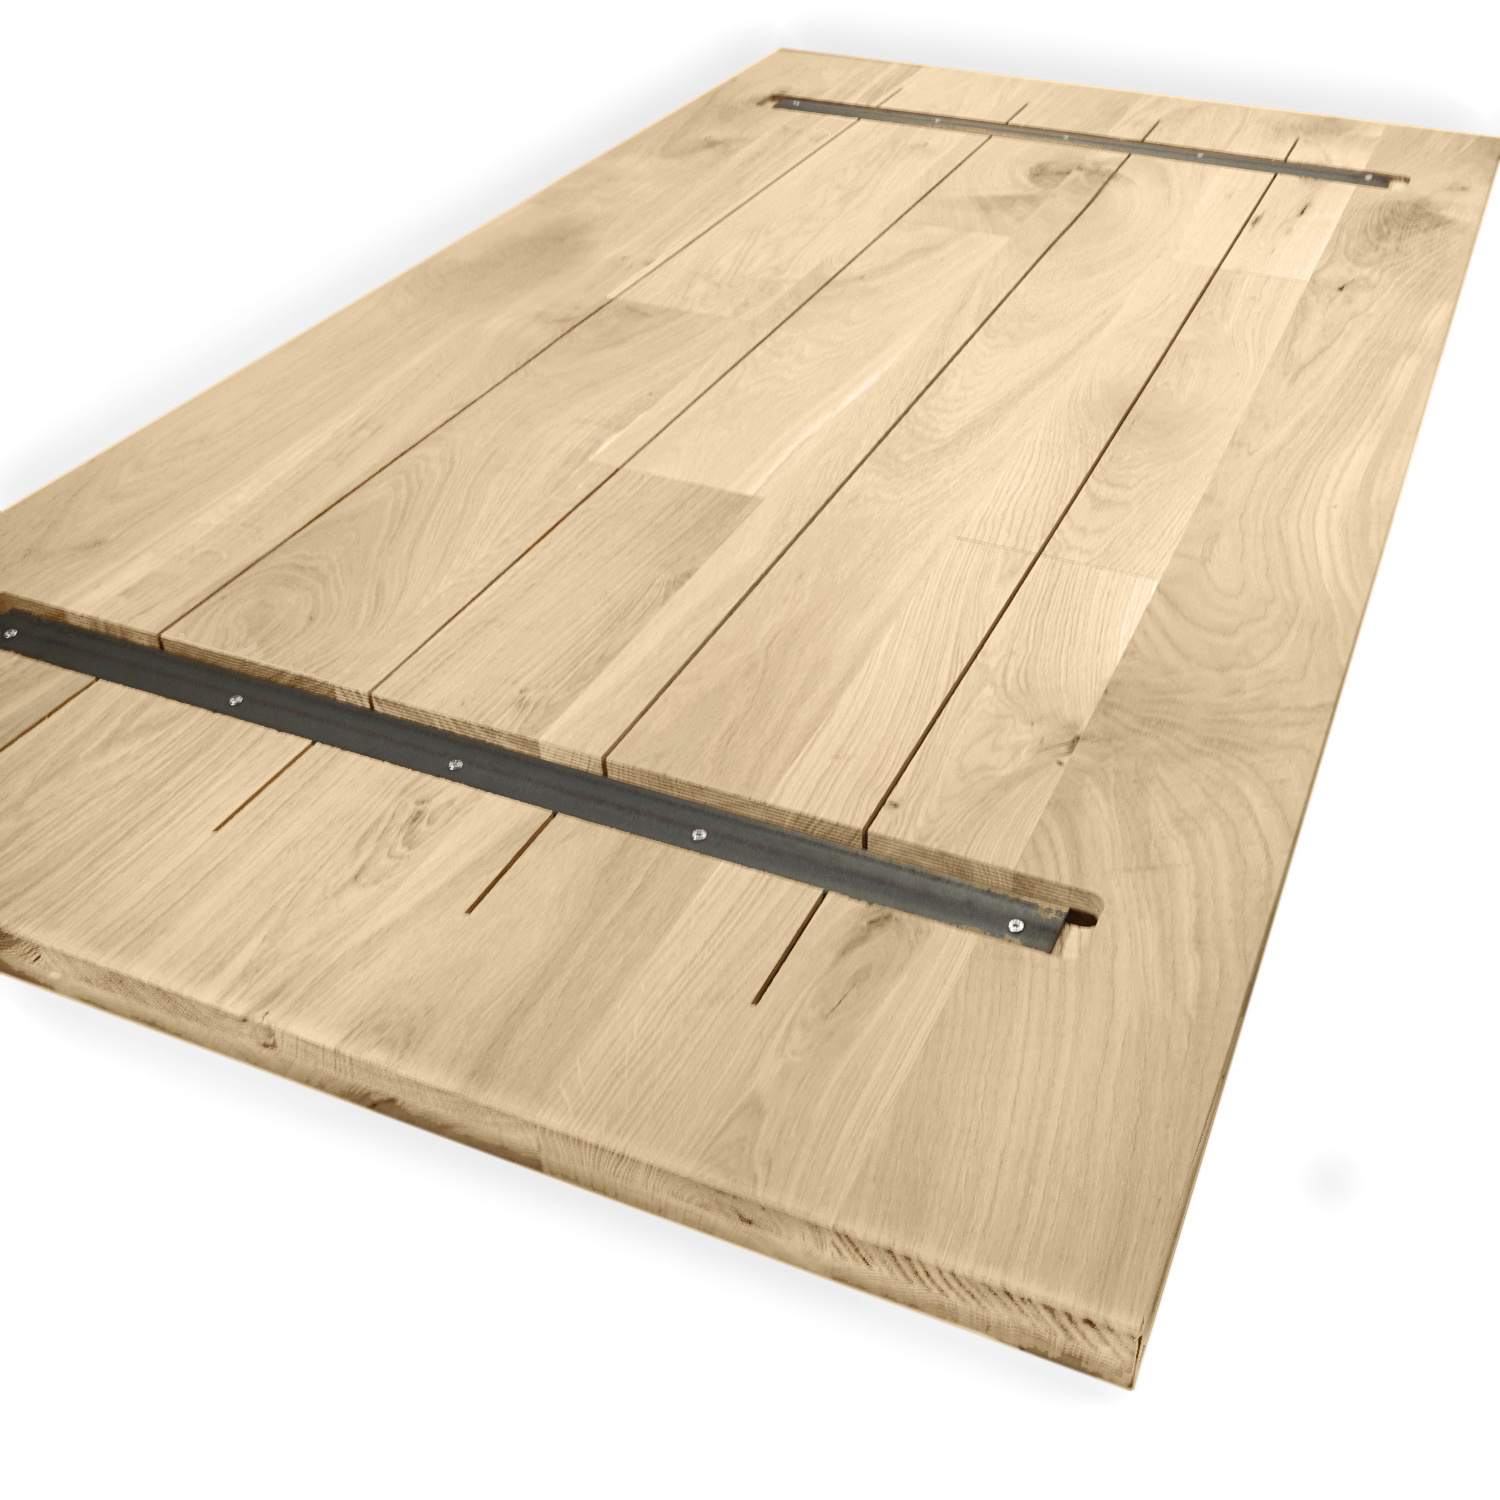 Foutvrij eiken tafelblad - Op Maat - 2,3 cm dik - Voordelig online | EIKENvakman